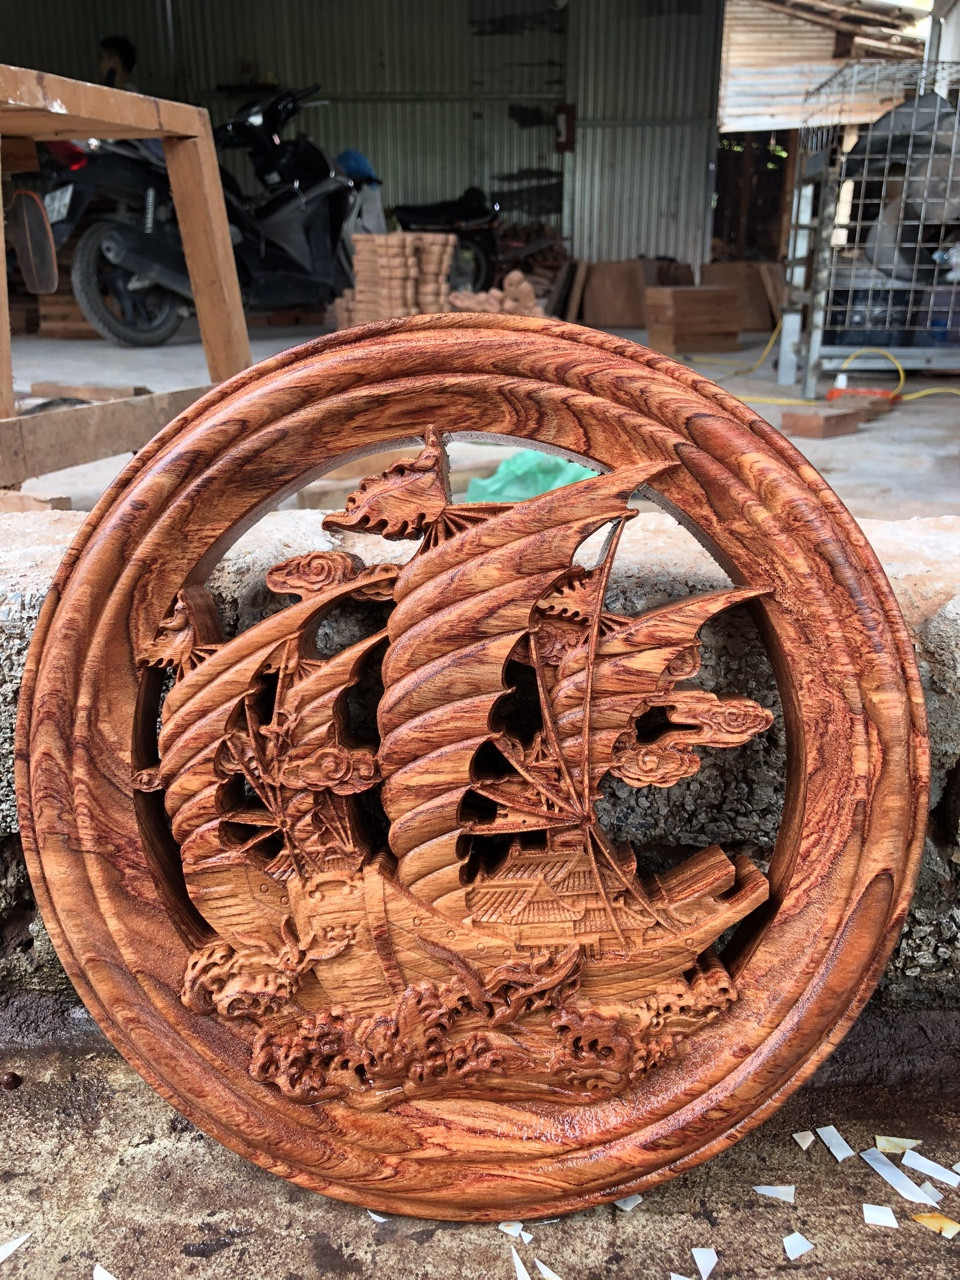 Đĩa gỗ phong thủy thuyền buồm bằng gỗ hương đường kính đĩa 30 cm dày 4 cm